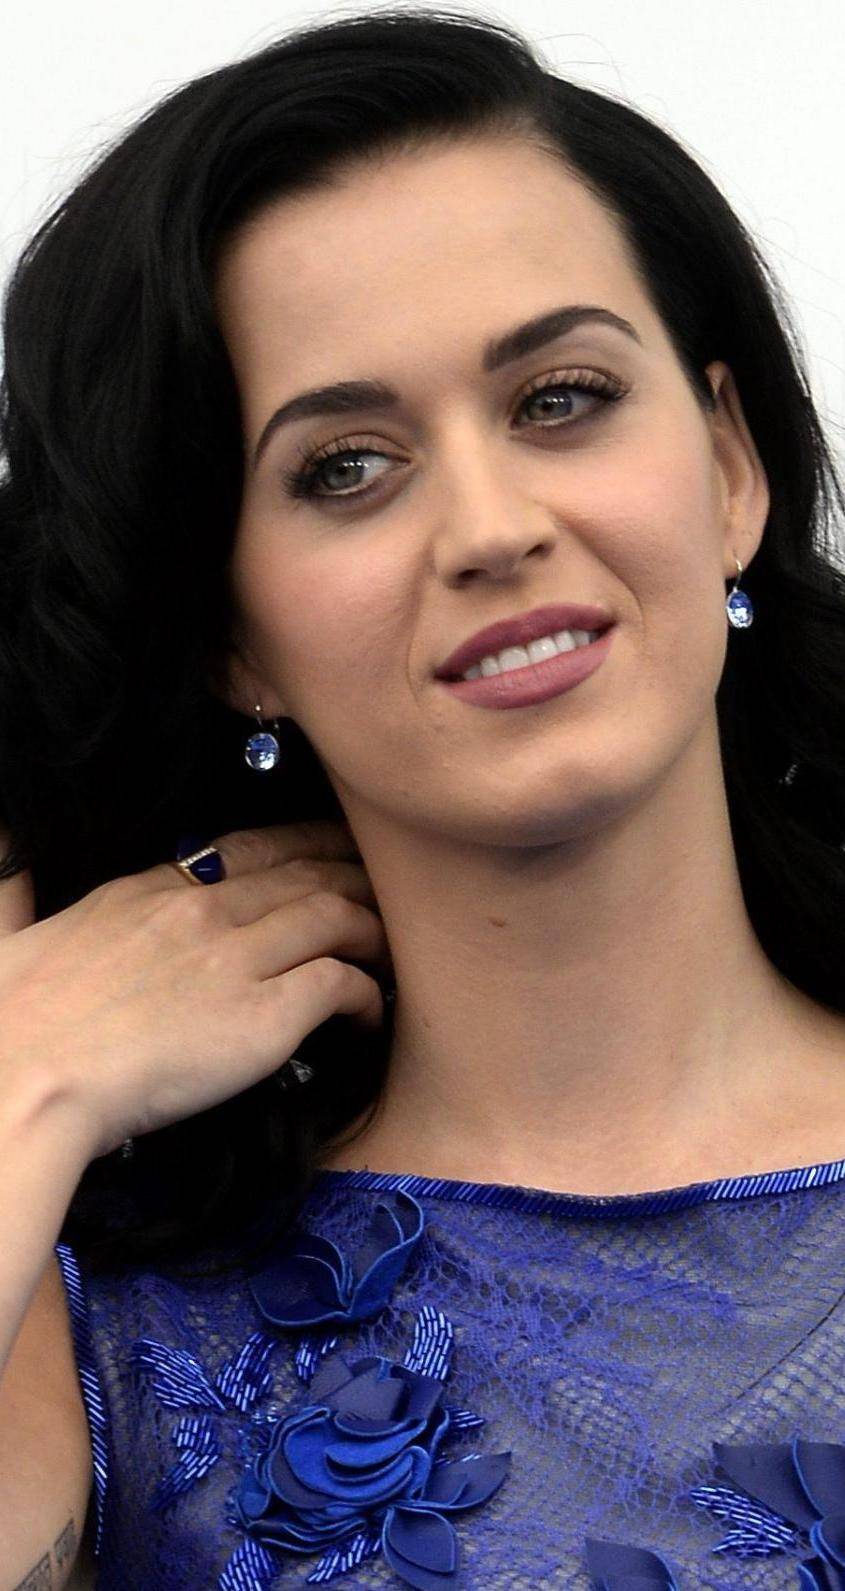 La diva Katy Perry: «Ho pensato al suicidio»Tra crisi personale e marketing